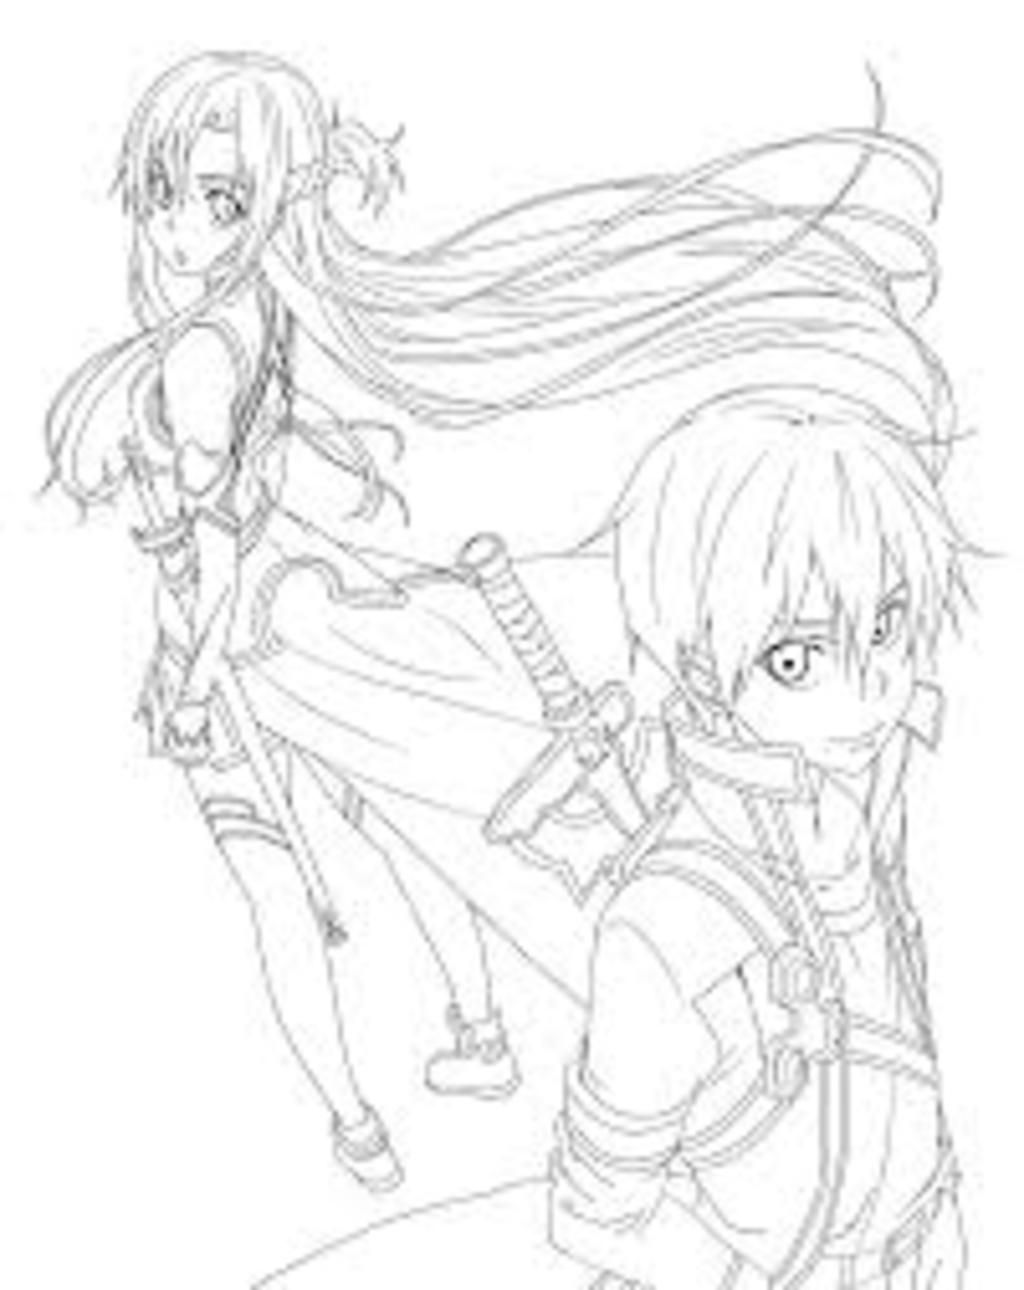 Vẽ cặp đôi Kirito và Asuna nha Tô màu nữa nha các bạn câu hỏi 969520   hoidap247com